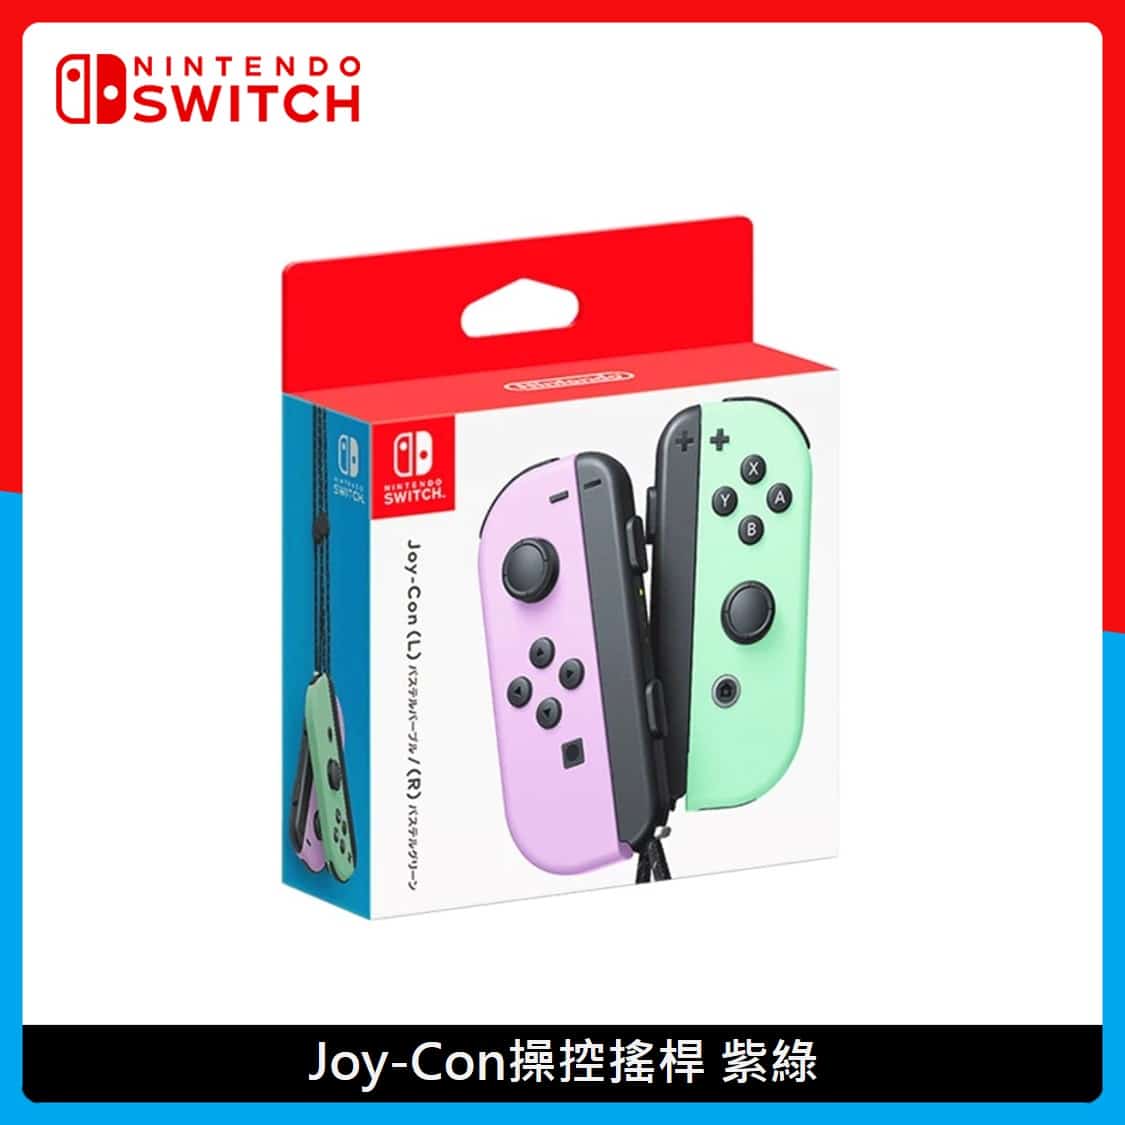 Nintendo Switch 任天堂Joy-Con 控制器組2色選| 法雅客網路商店